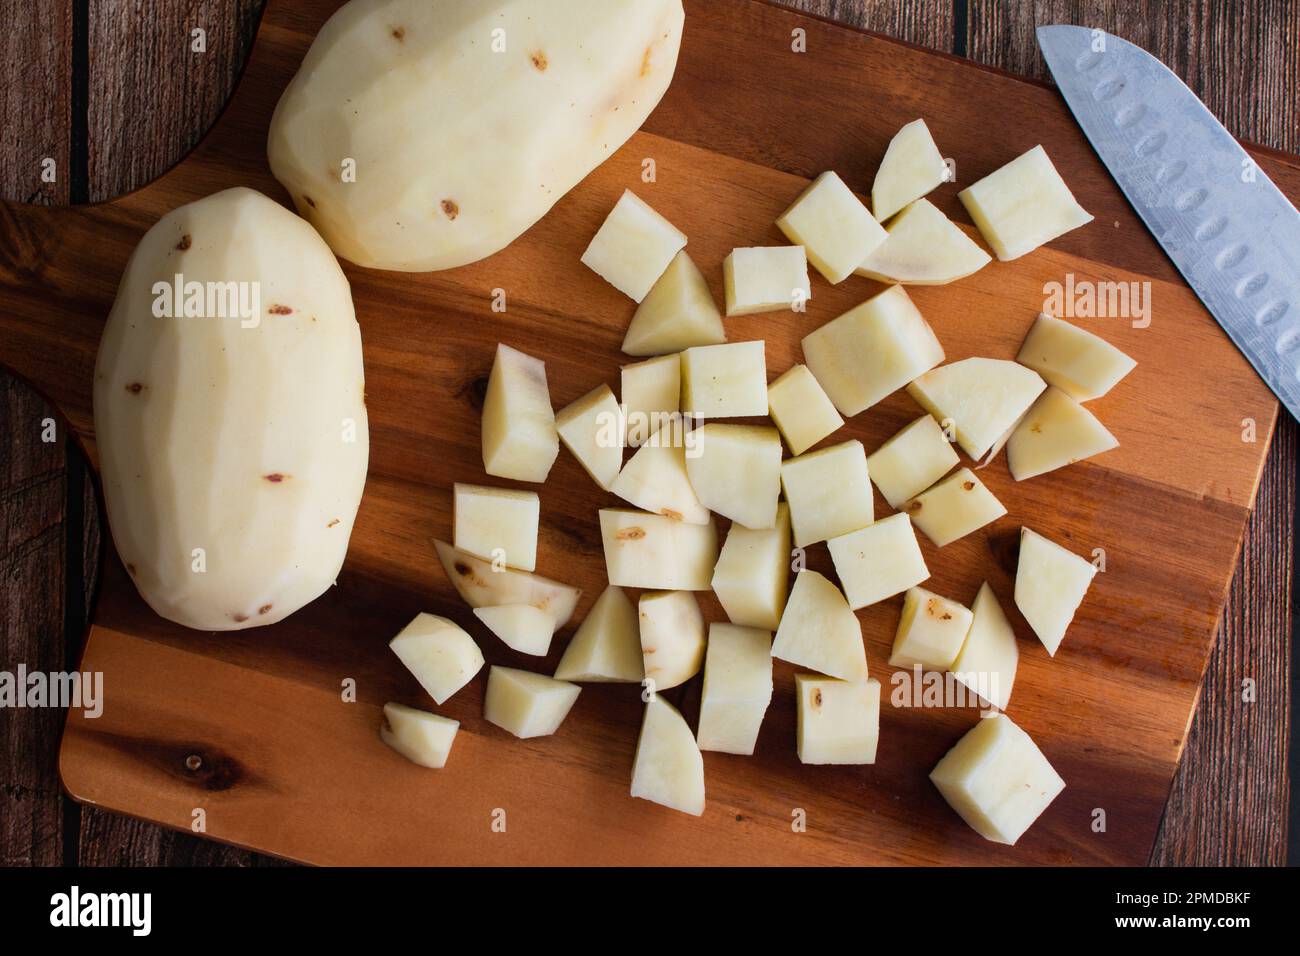 Pommes de terre Russet pelées et coupées en cubes sur une planche à découper en bois : pommes de terre fraîches hachées en petits cubes avec un couteau de cuisine et une planche à découper Banque D'Images